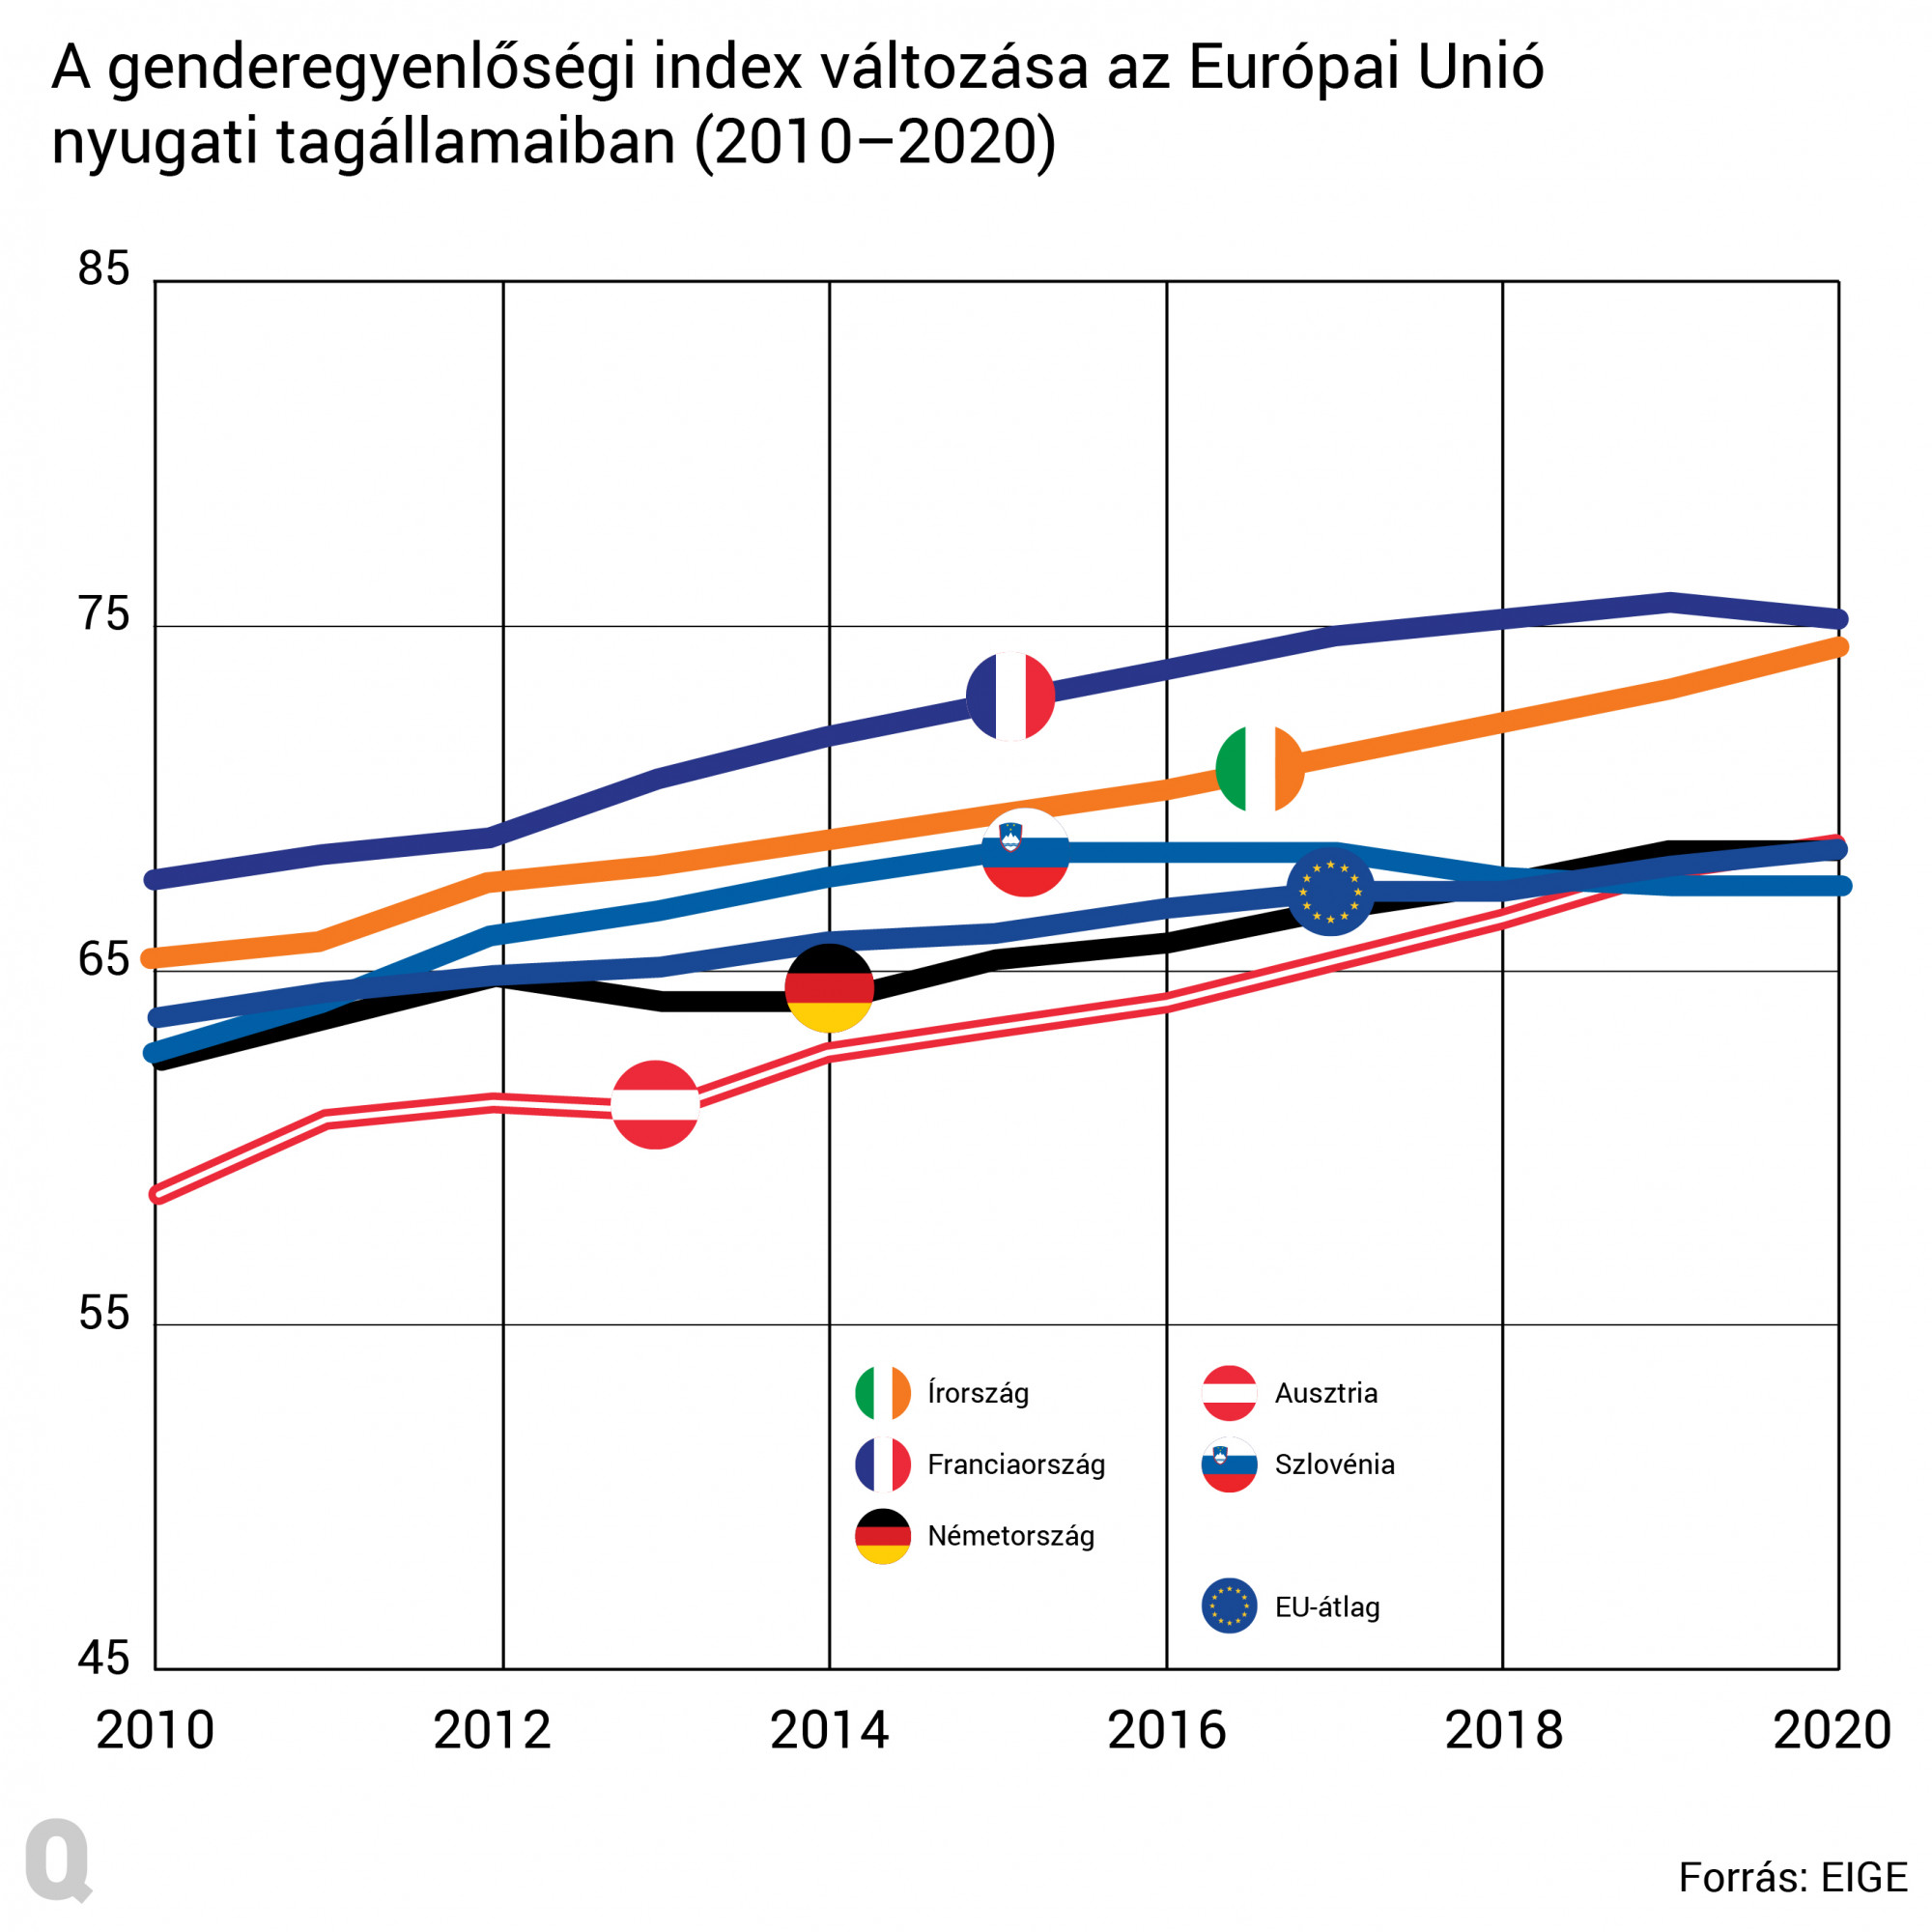 Franciaországban és Írországban valamivel az átlag feletti az egyenlőség, Németországban, Szlovéniában és Ausztriában átlag körüli mutatókat produkálnak.